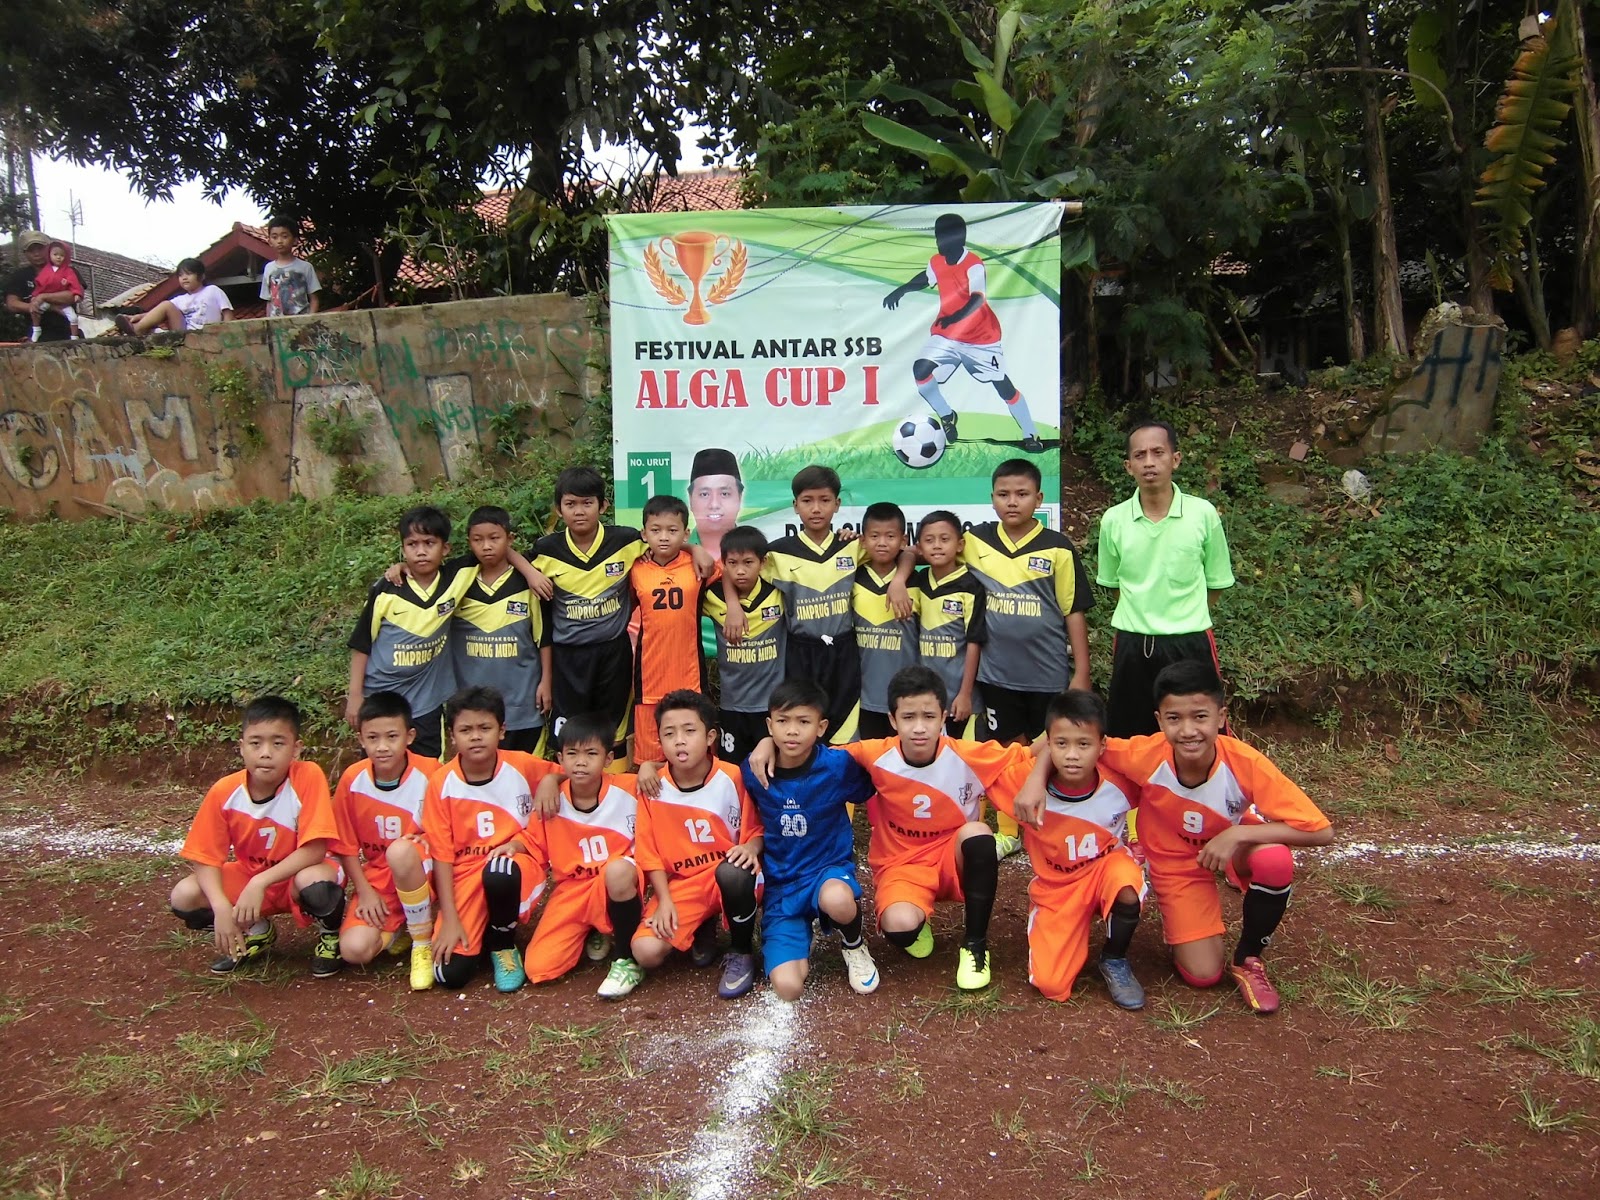 Alga cup